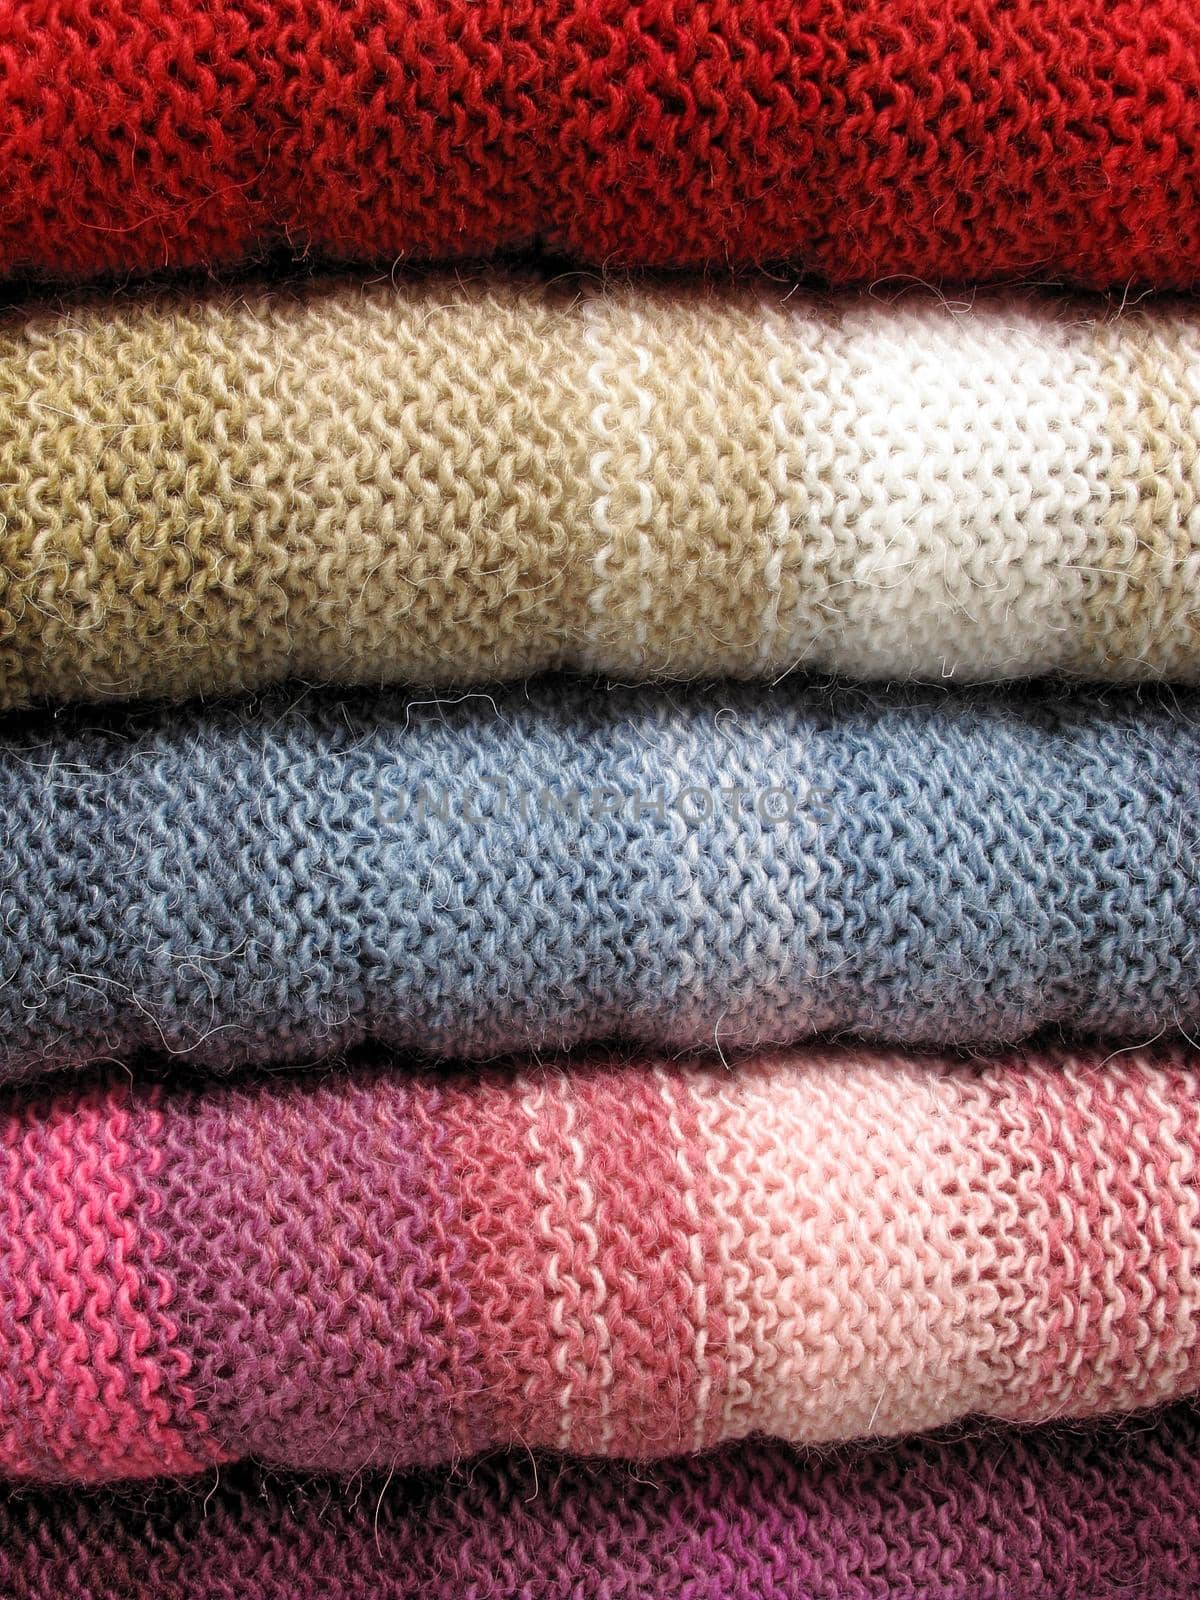 Peruvian hand made woolen fabric by aroas